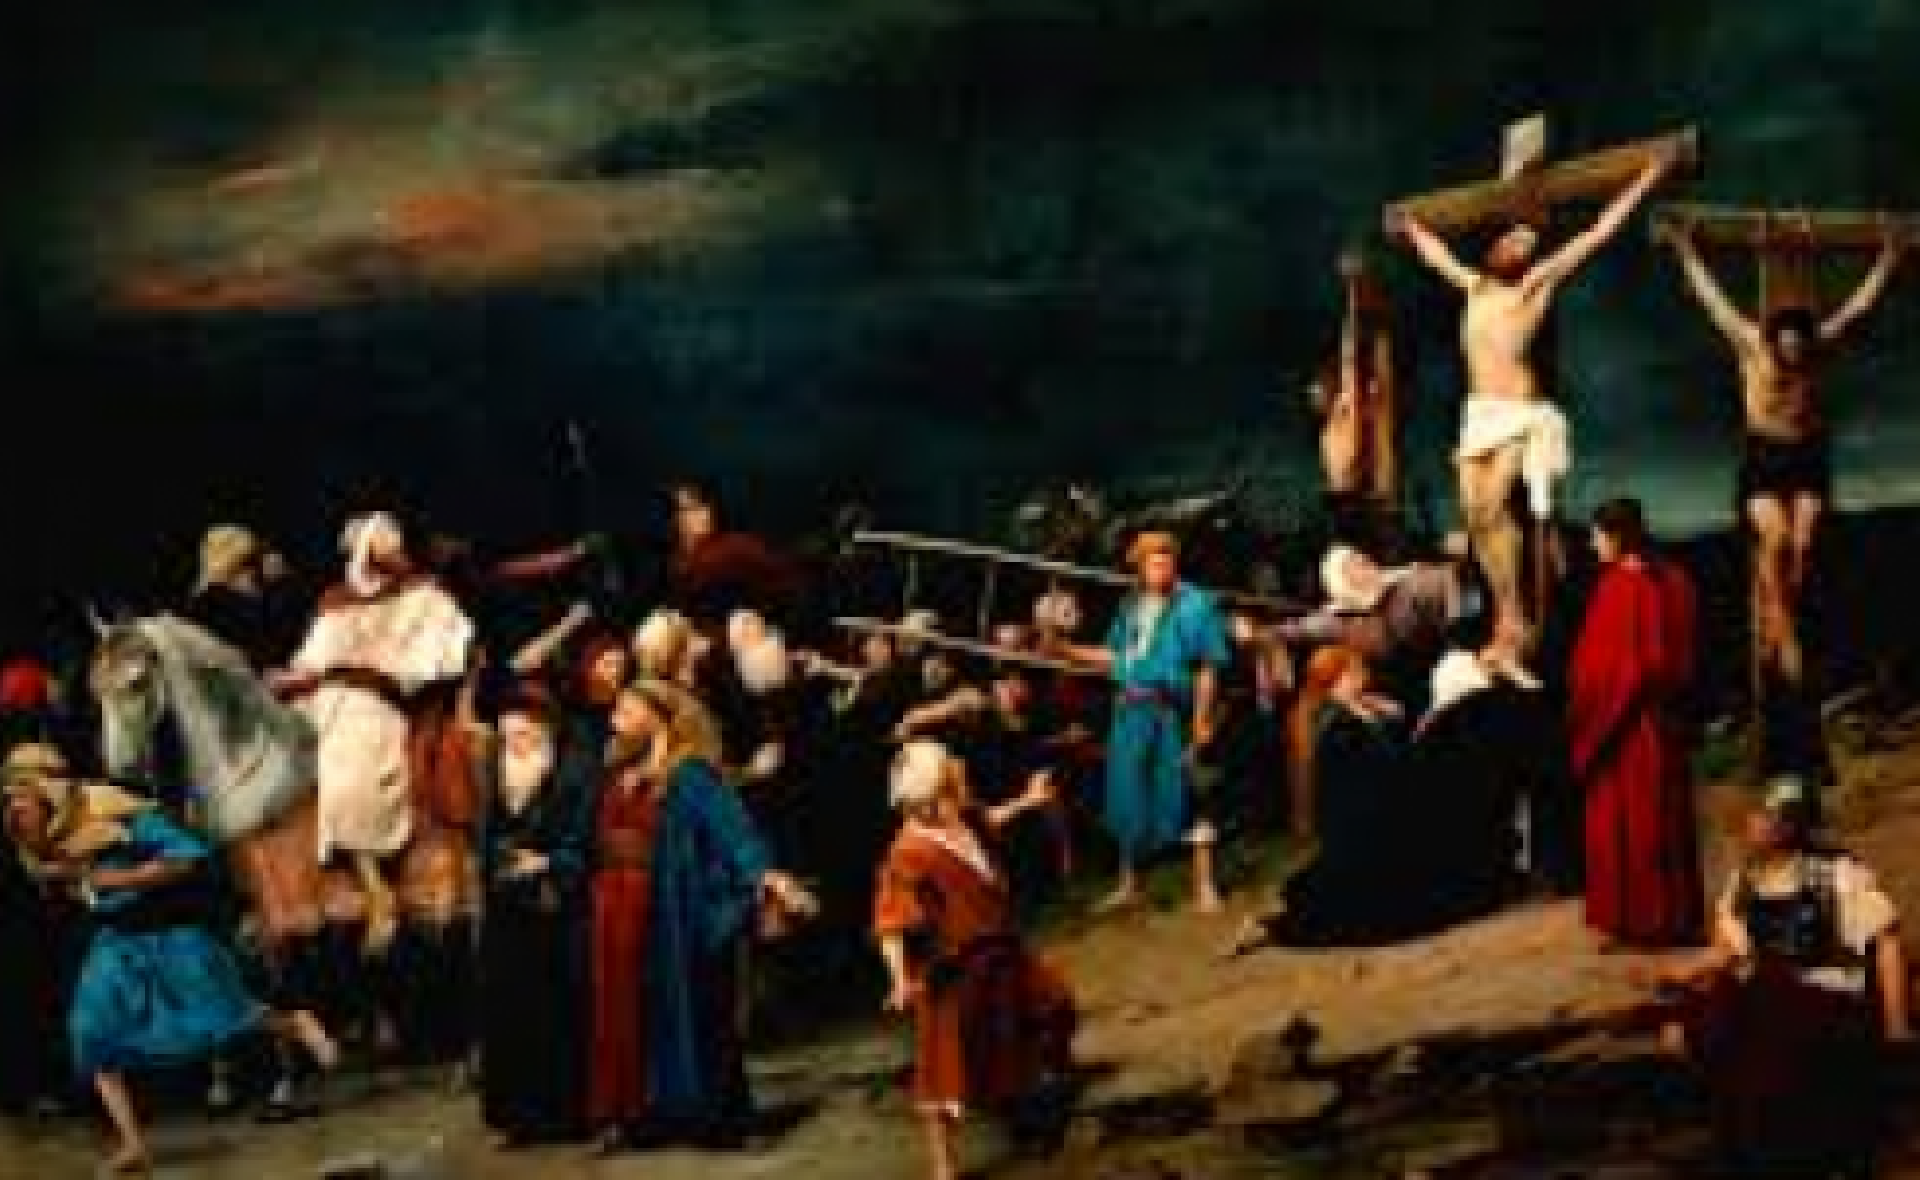 Haydn: Krisztus hét szava a keresztfán című előadás